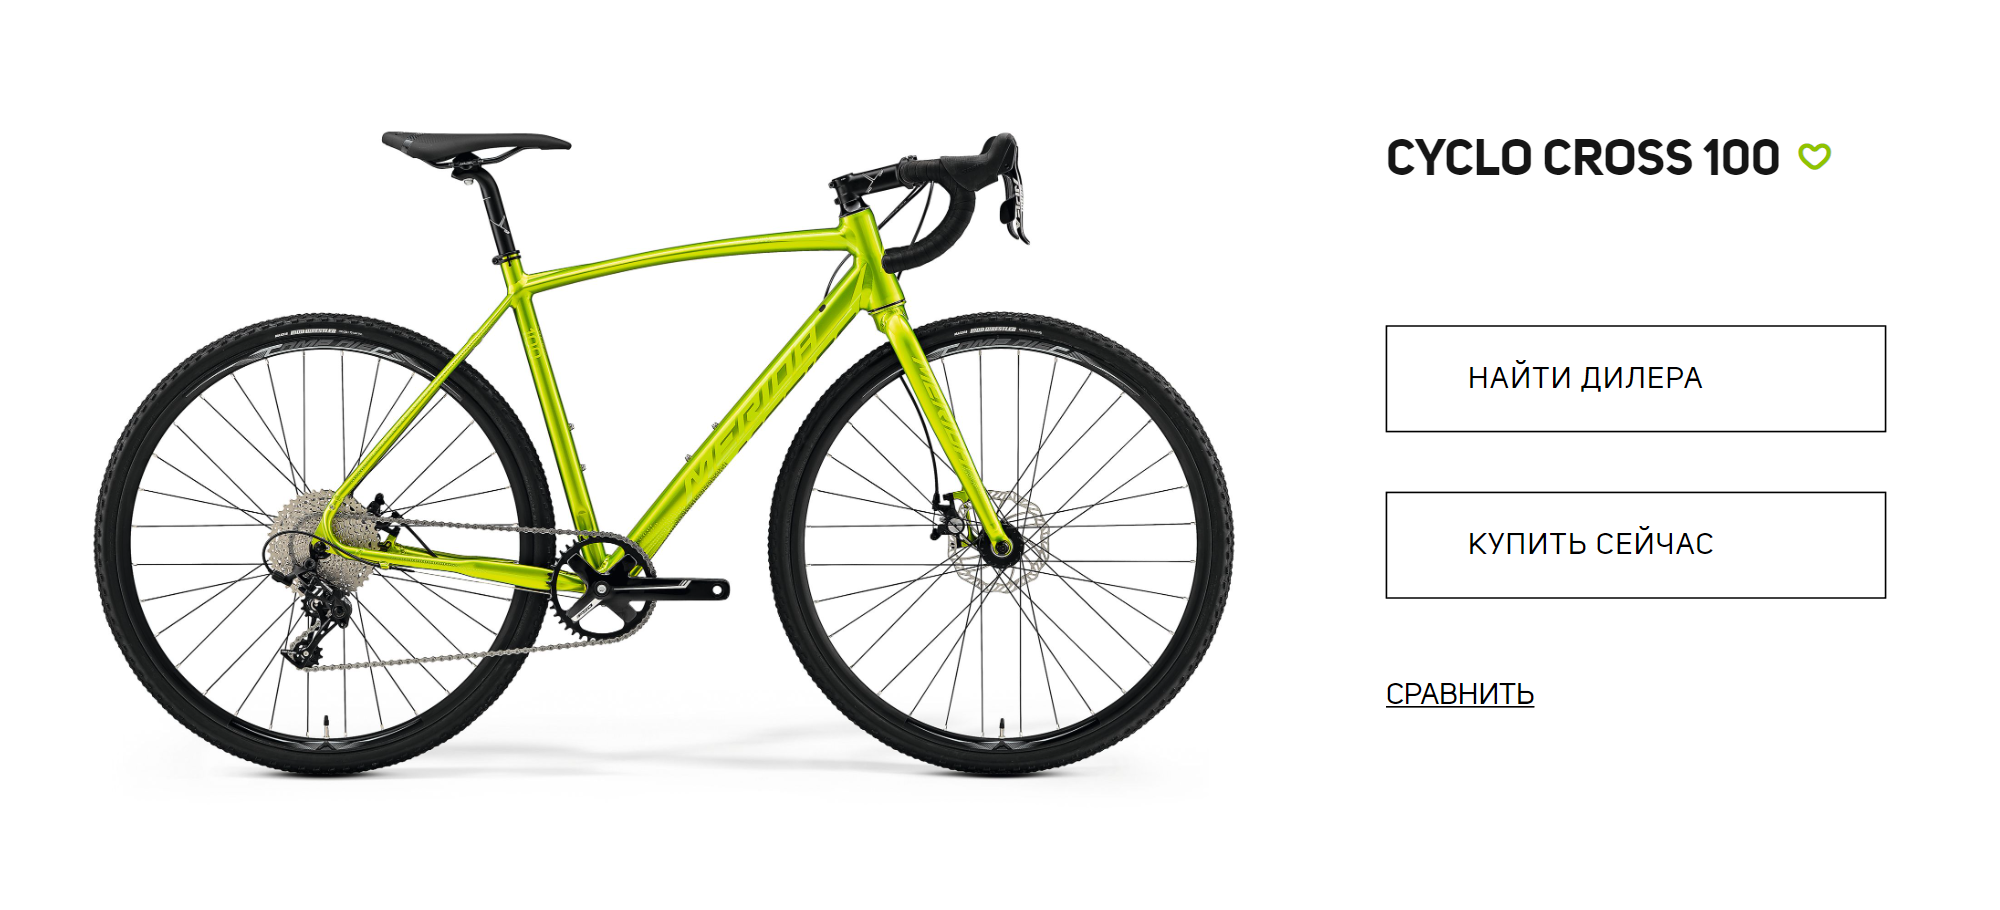 Так выглядит циклокросс. На официальном сайте именно такой велосипед Merida не купить, но можно найти официальных дилеров. Источник: merida⁠-⁠bikes.com